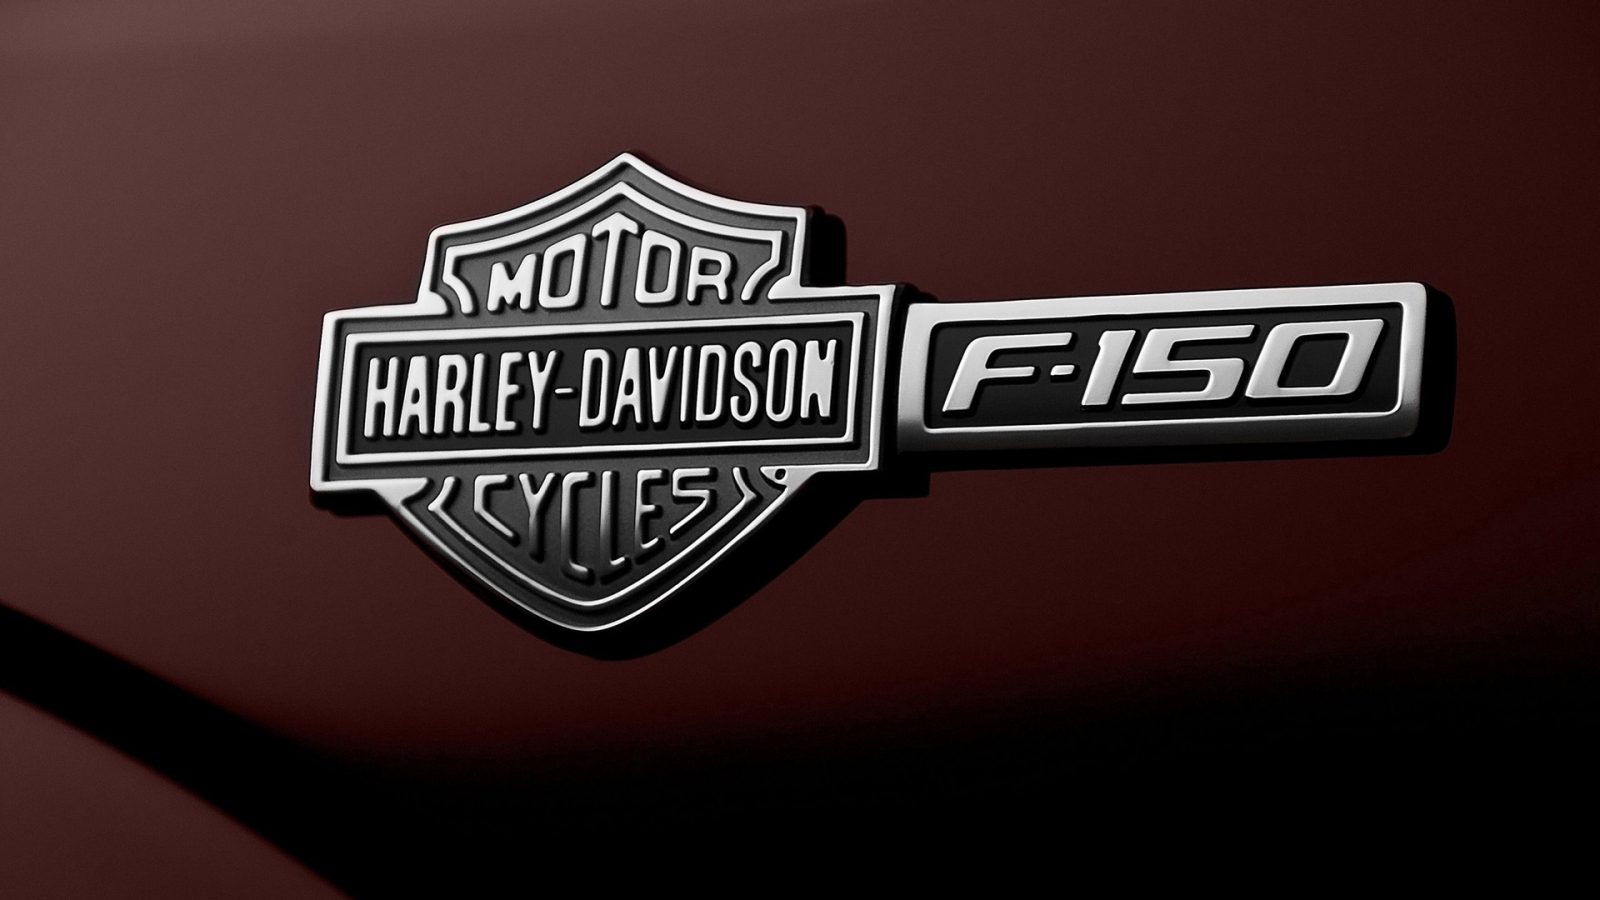 Ford F-150 Harley-Davidson Emblem for 1600 x 900 HDTV resolution